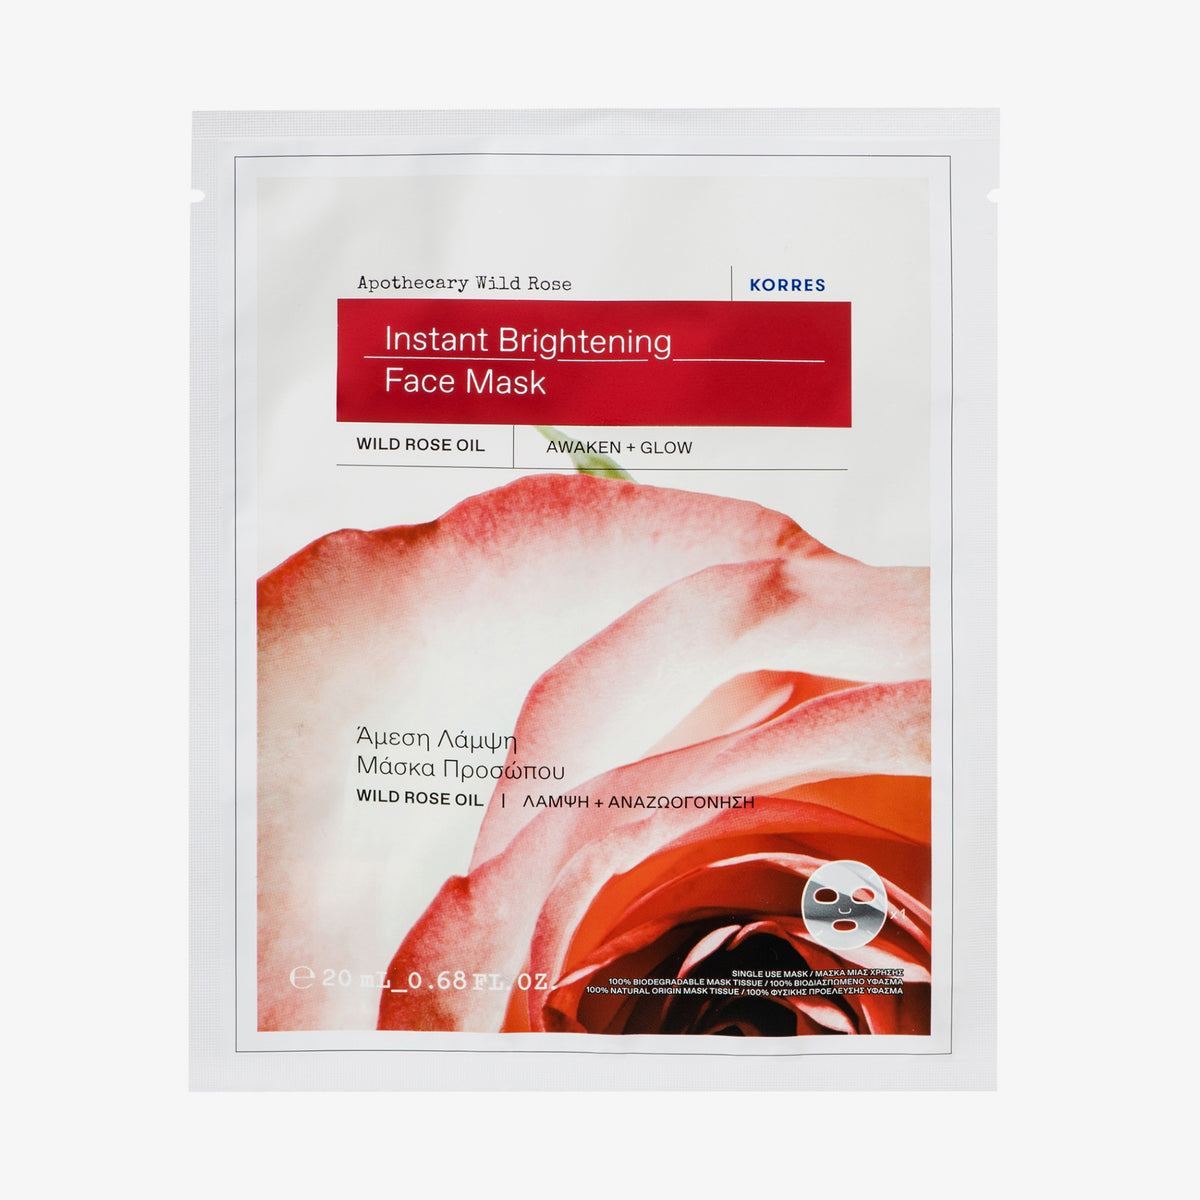 KORRES | Apothecary Wild Rose Tuch-Maske für strahlende Haut mit Sofort-Effekt